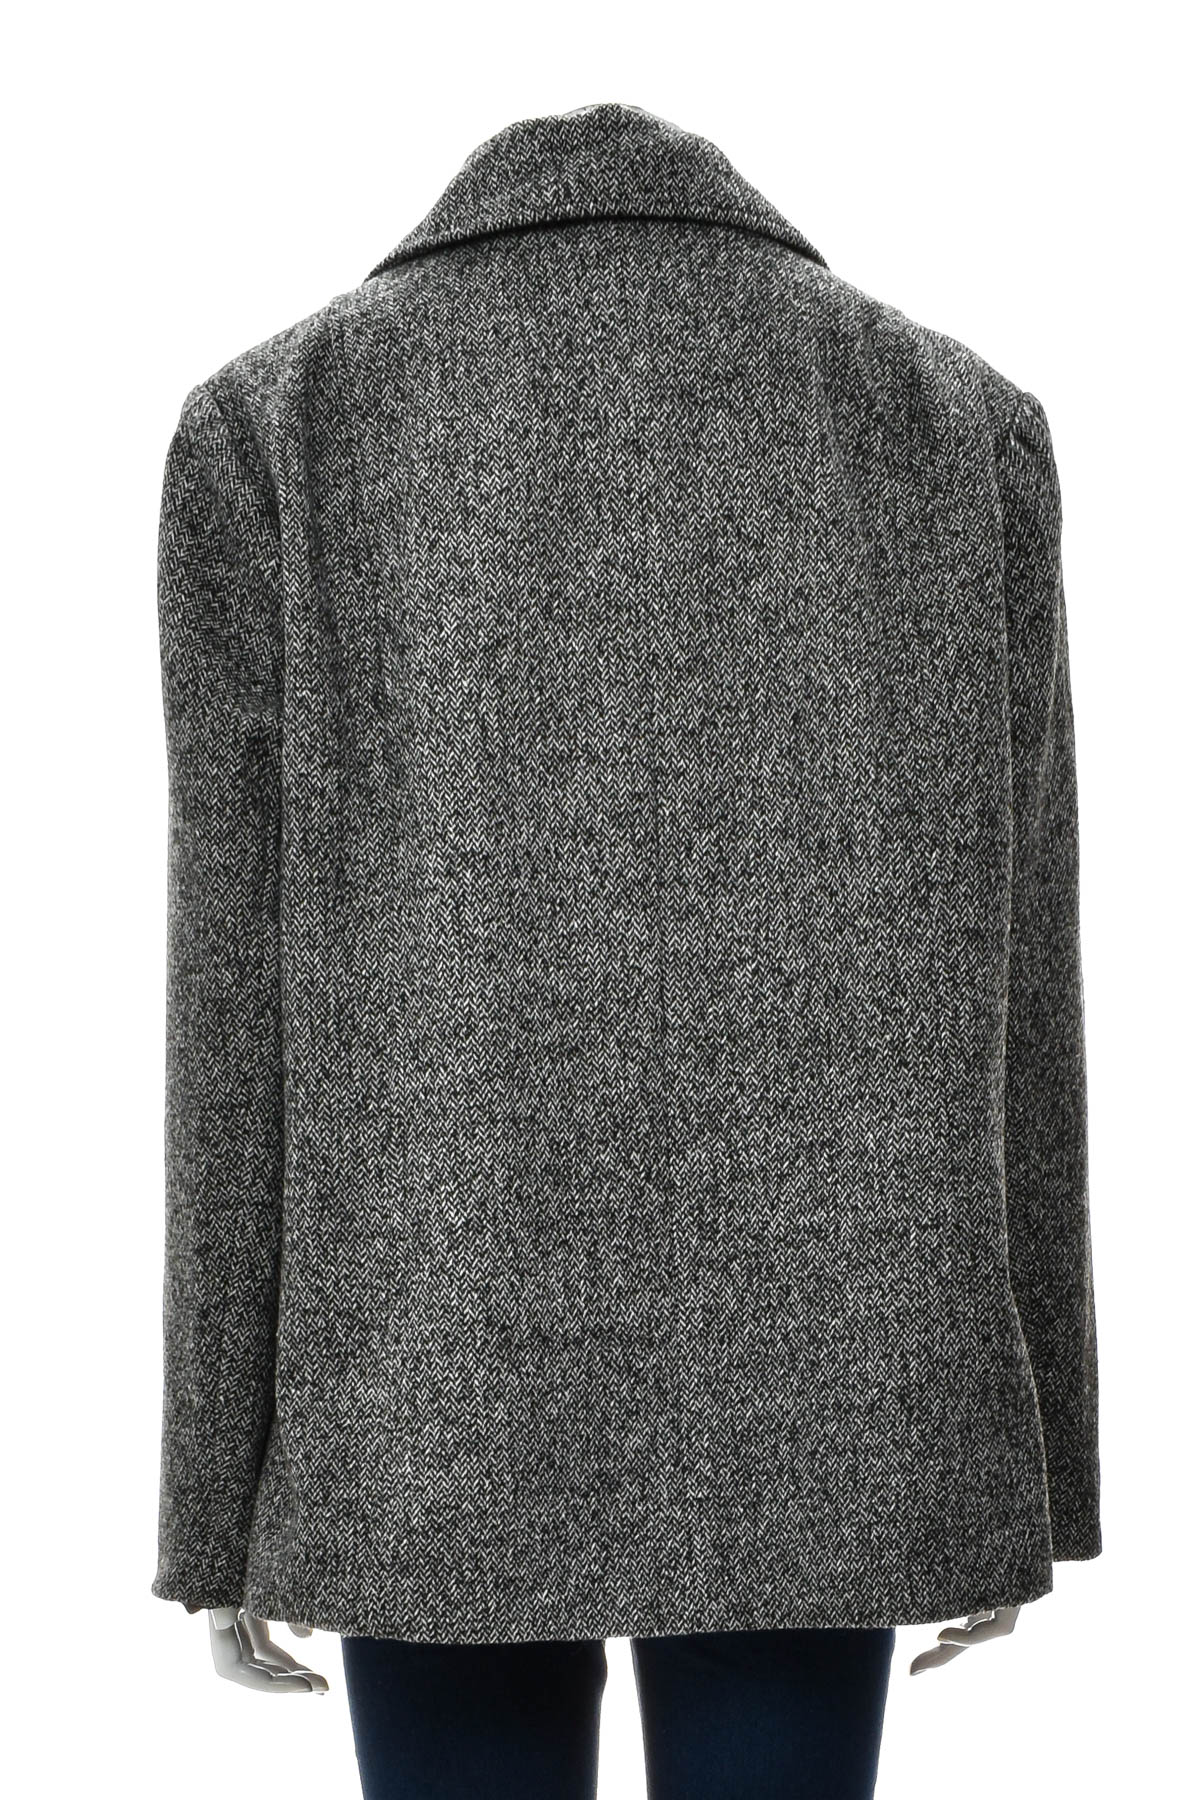 Women's coat - Millers - 1